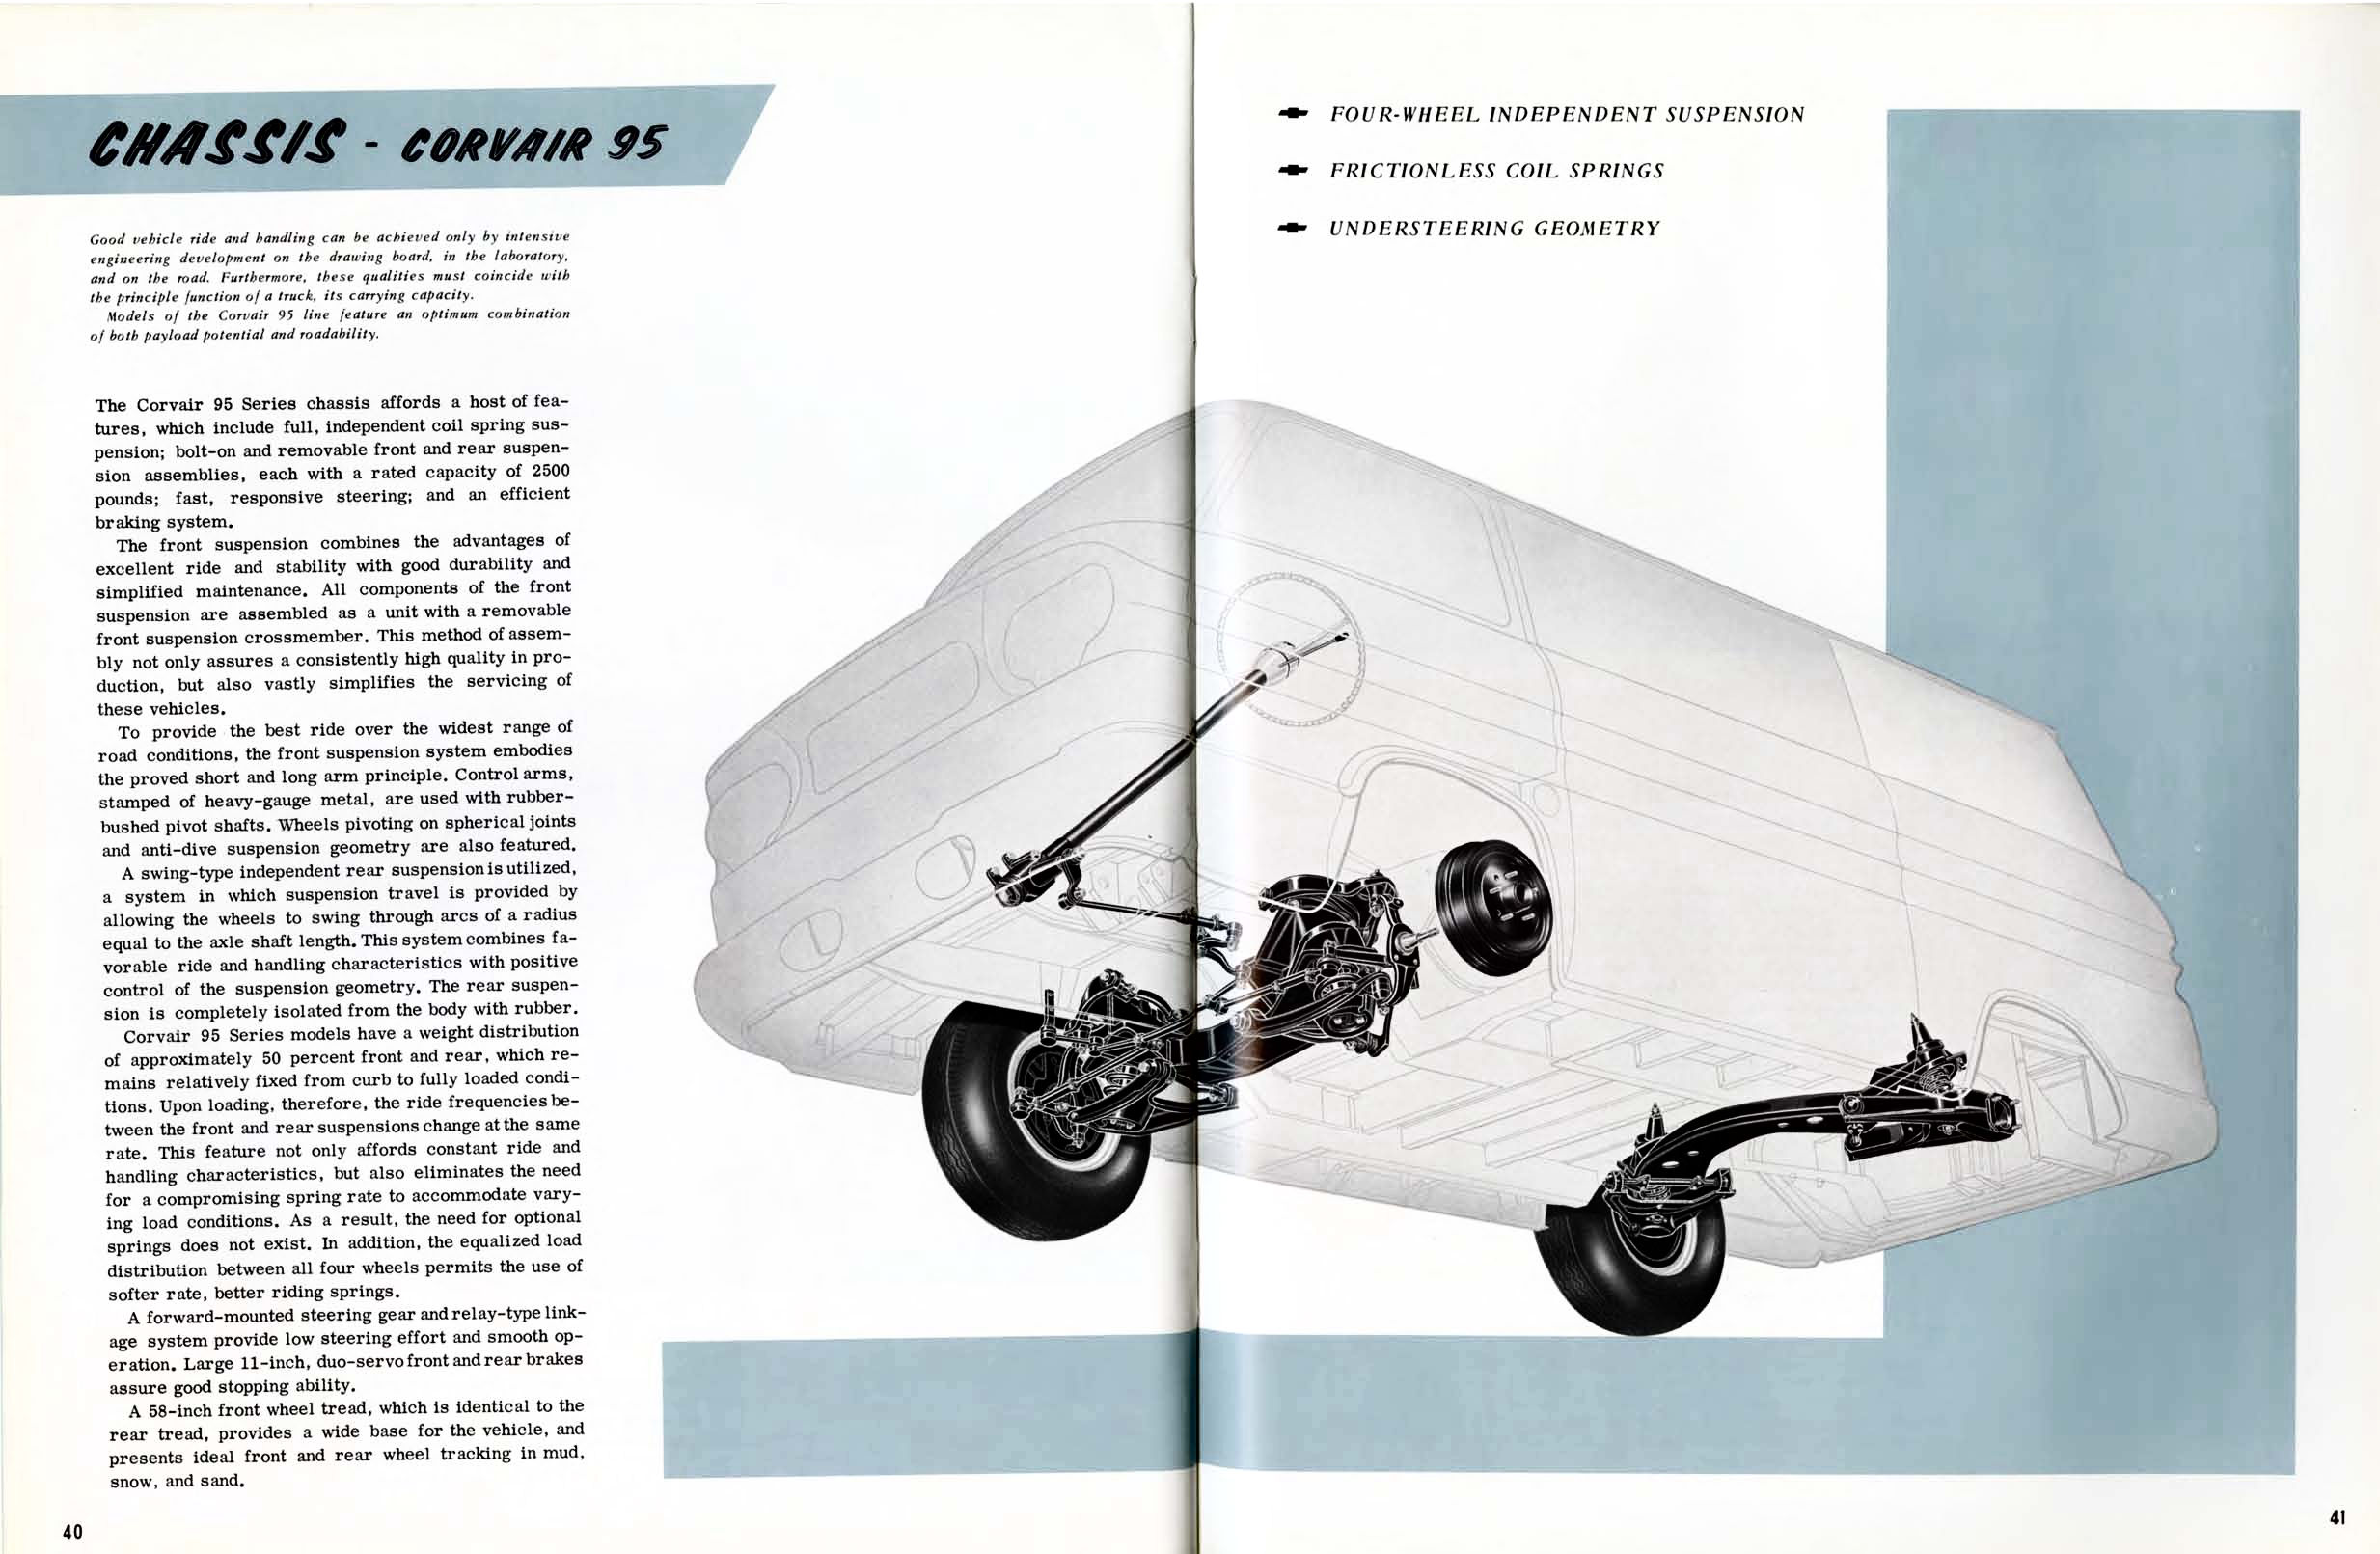 1961 Chevrolet Truck Engineering Features-40-41